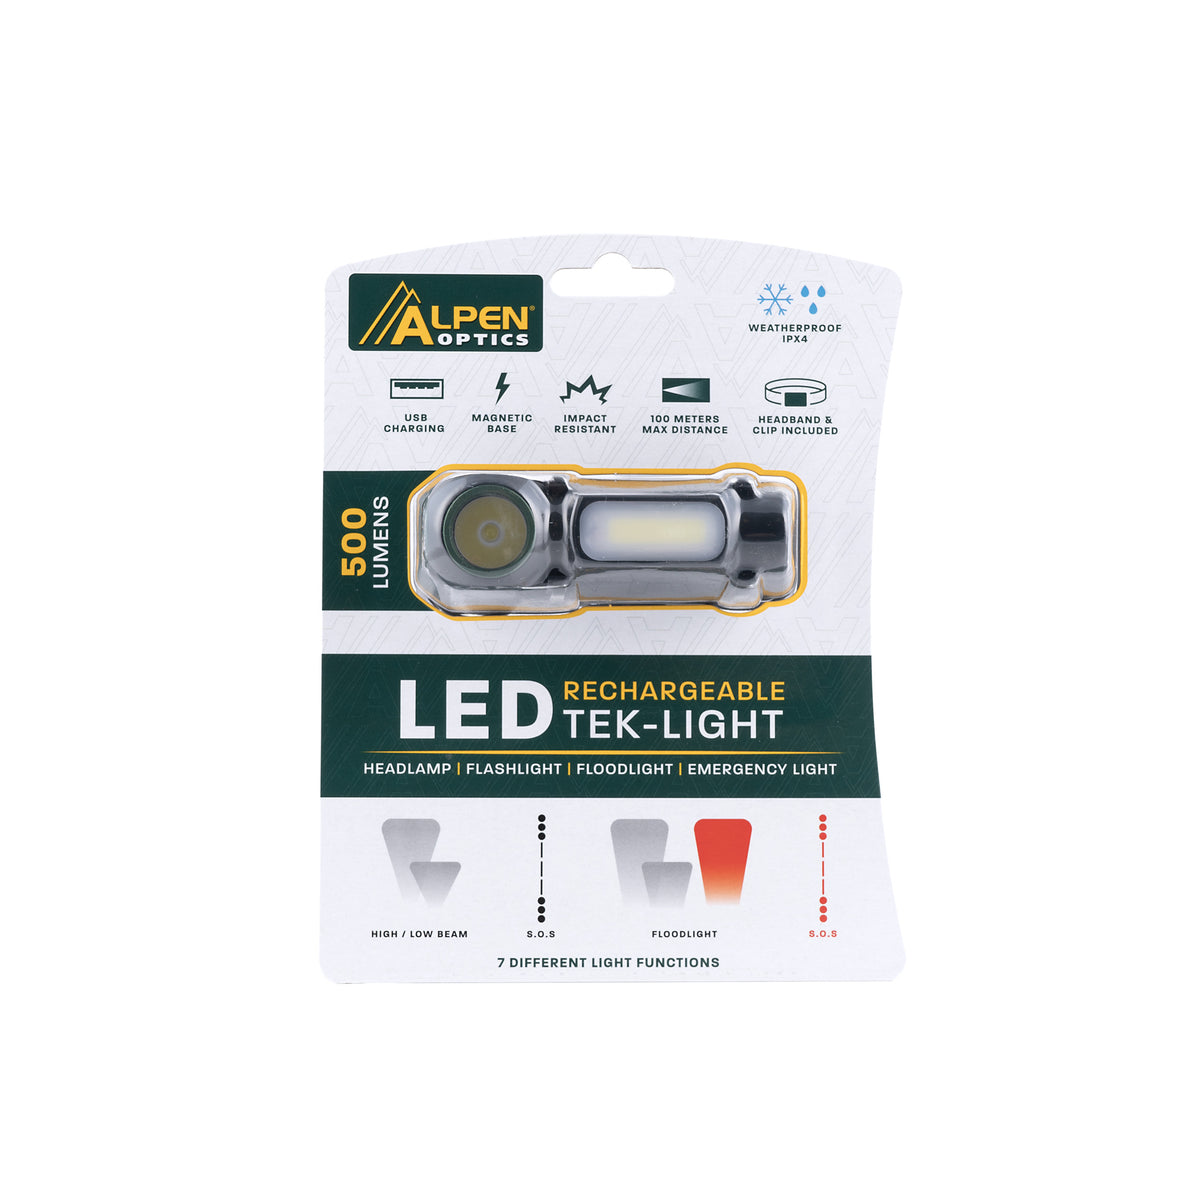 Alpen Optics LED Rechargeable Tek-Light Headlamp